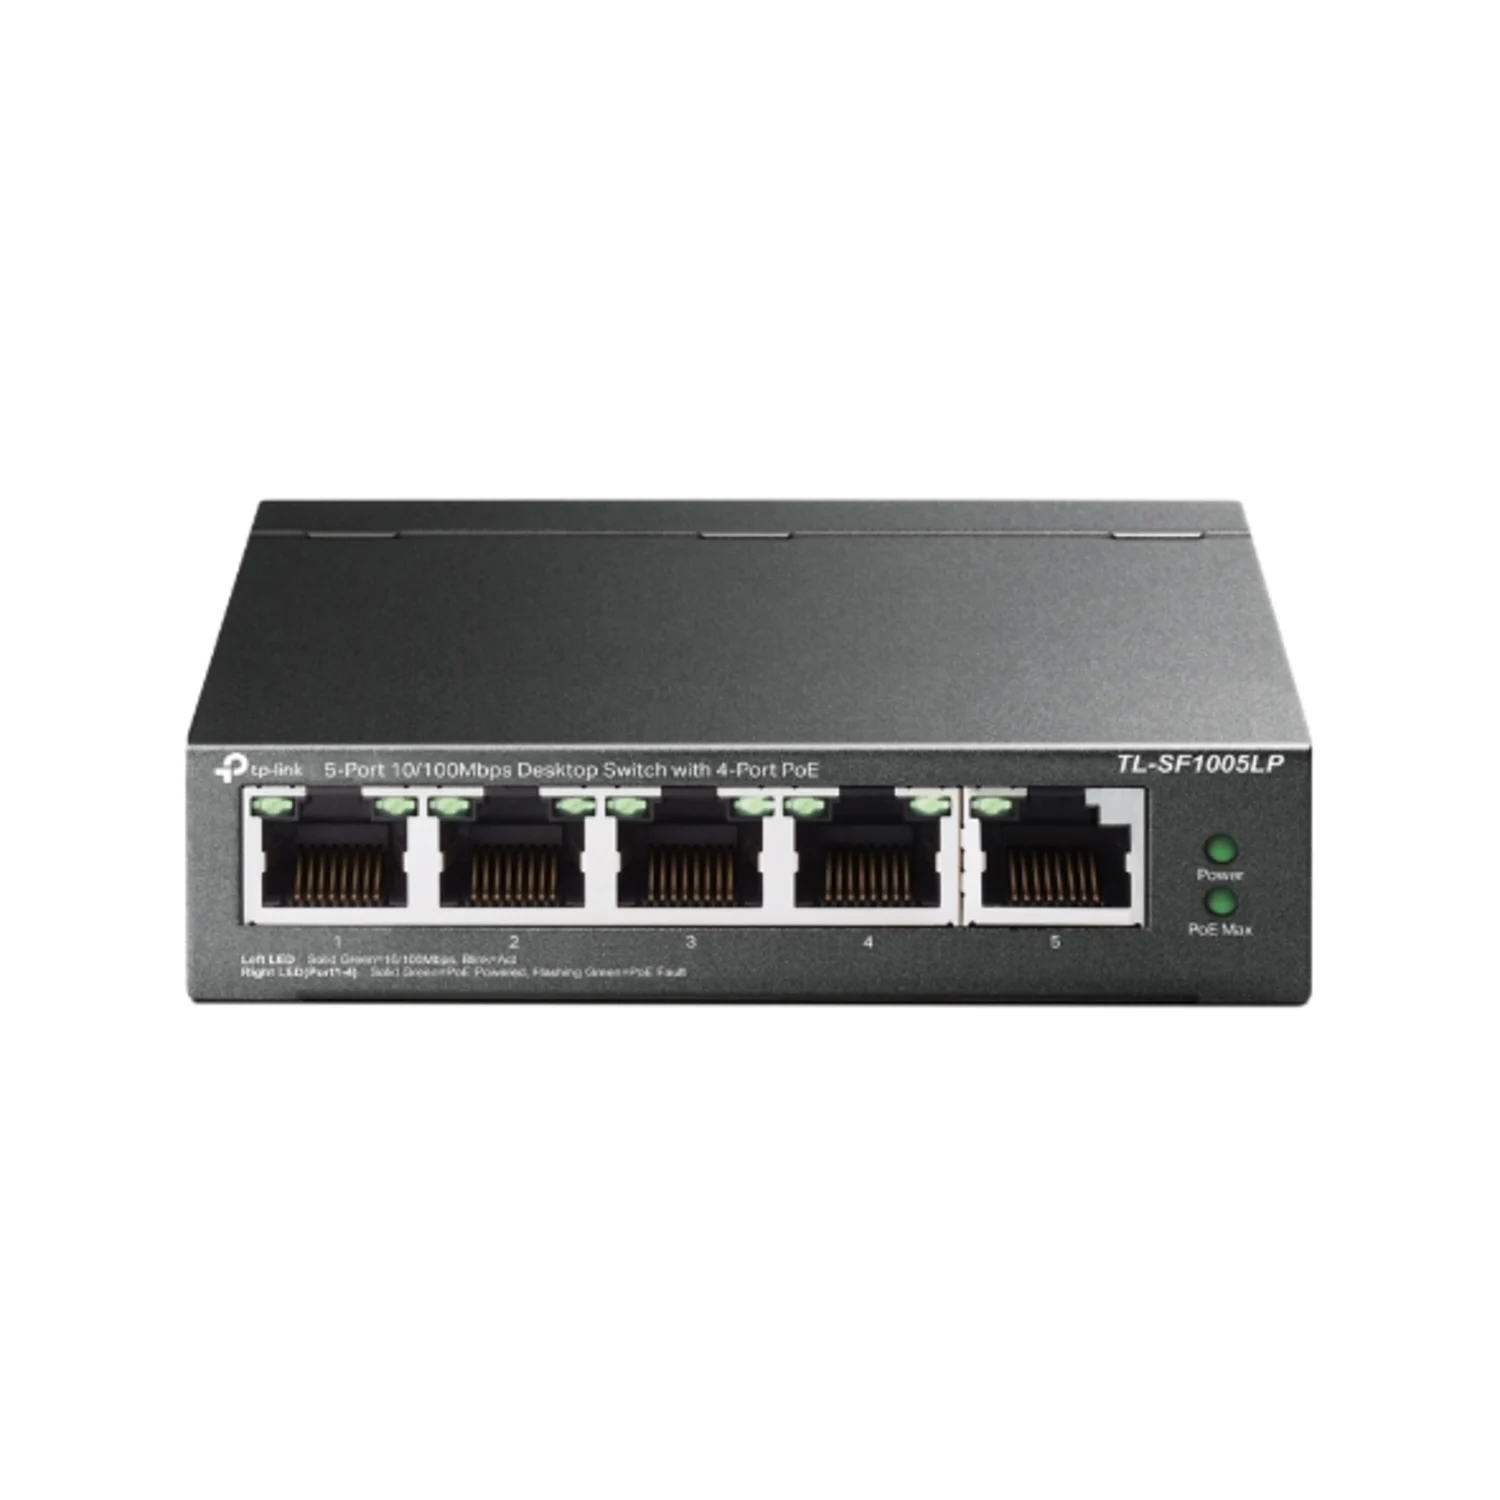 Hub Switch TP-link 5 portas / 10/100 / POE - Preto (TL-SF1005LP)